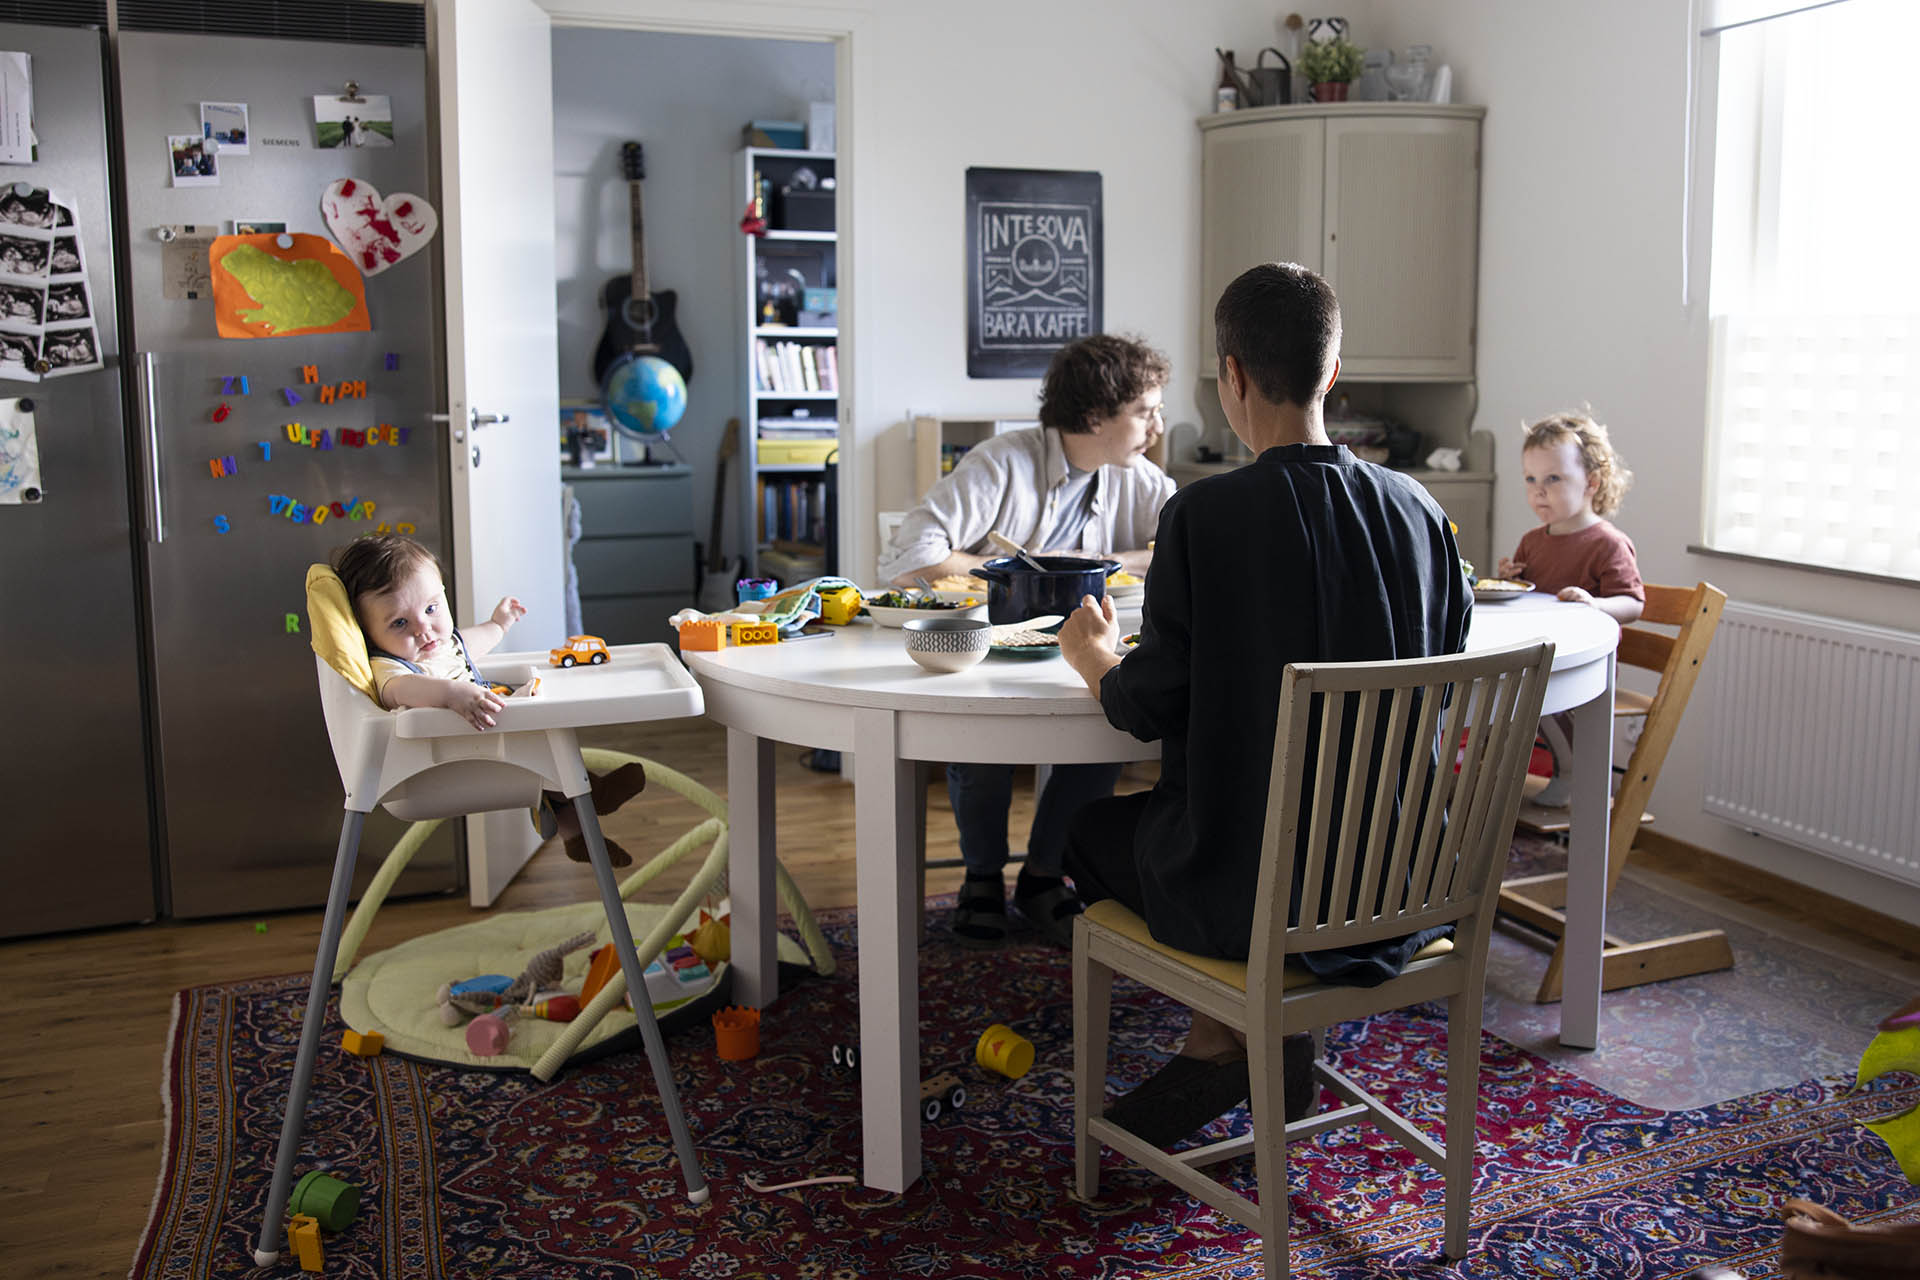 En familj som sitter vid ett matbord i sitt kök och äter. Under bordet ligger det en stor persisk matta i rött och blått. På det rostfria kylskåpet ser man massa magneter och barnteckningar.